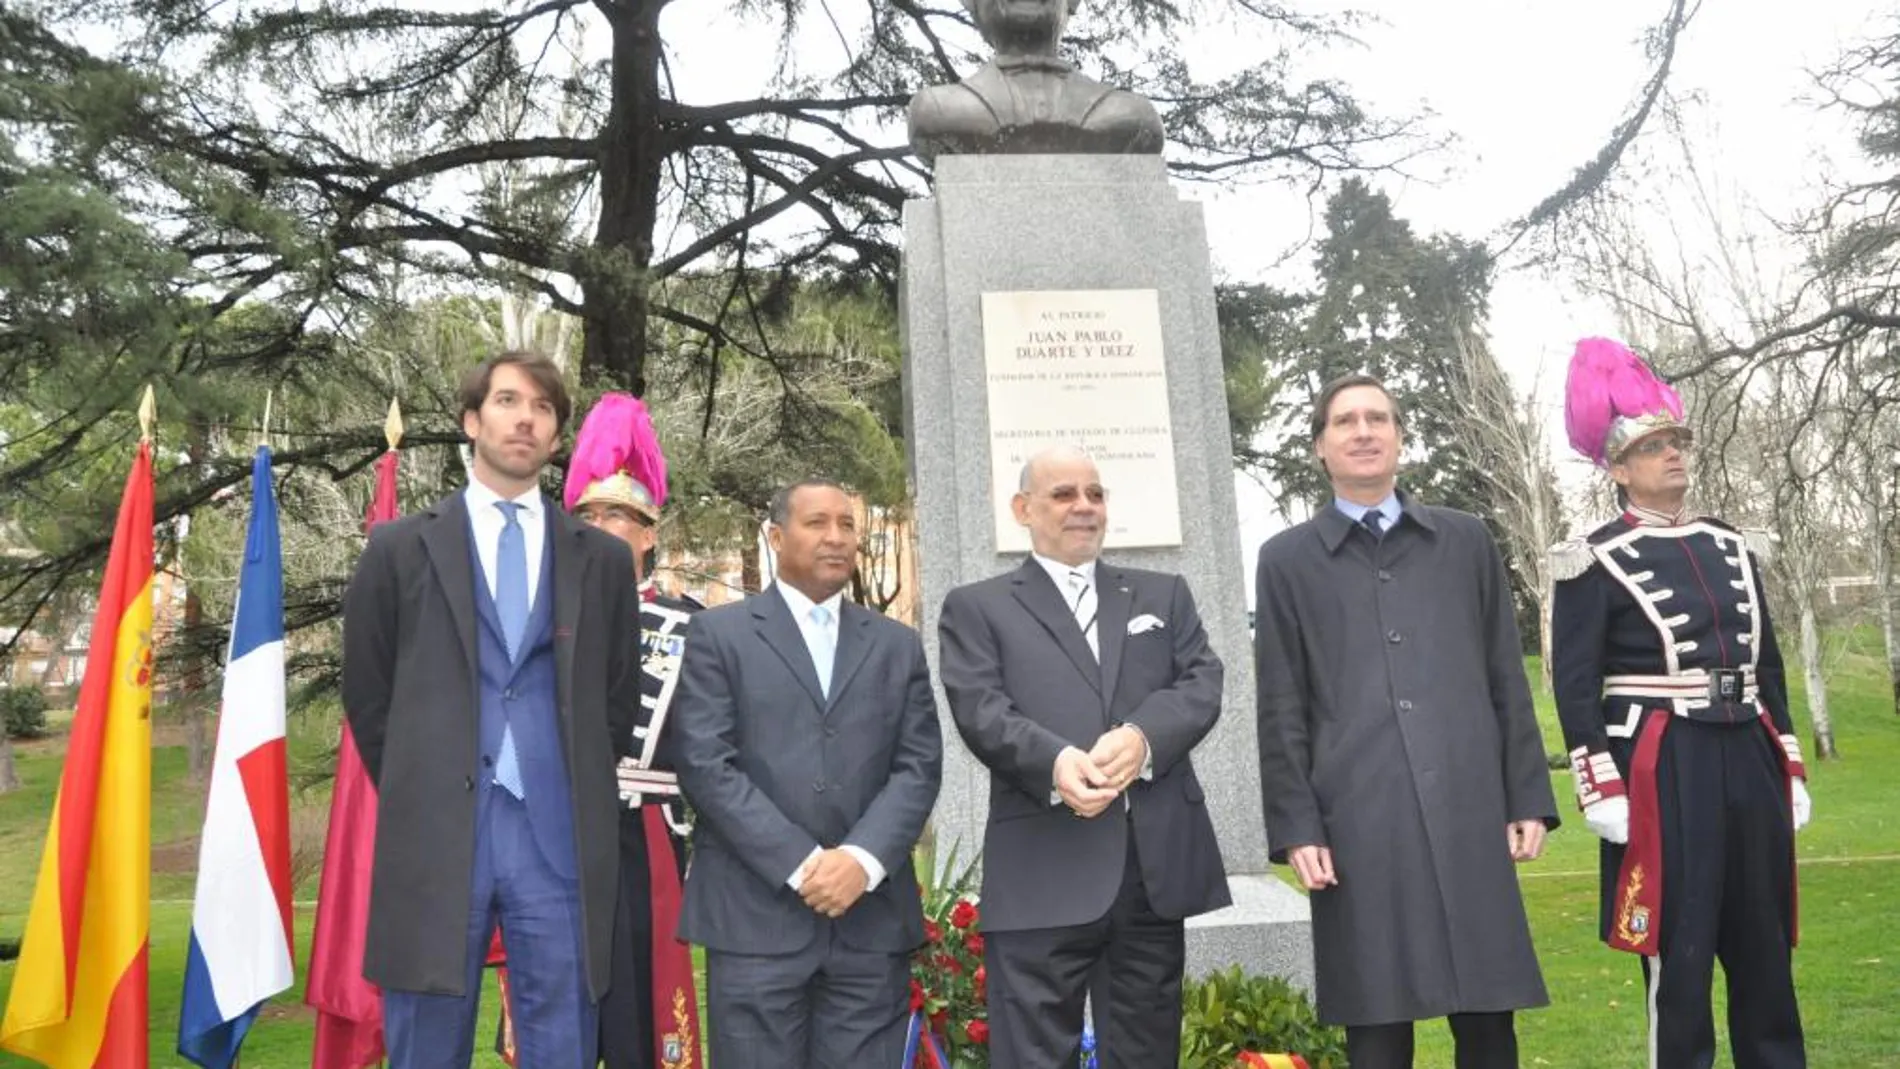 De izda a dcha: don Gonzalo Ortiz Lázaro; don Juan Cuevas; el embajador César Medina Abreu y don Álvaro Ballarín, delante del busto Juan Pablo Duarte y Diez.